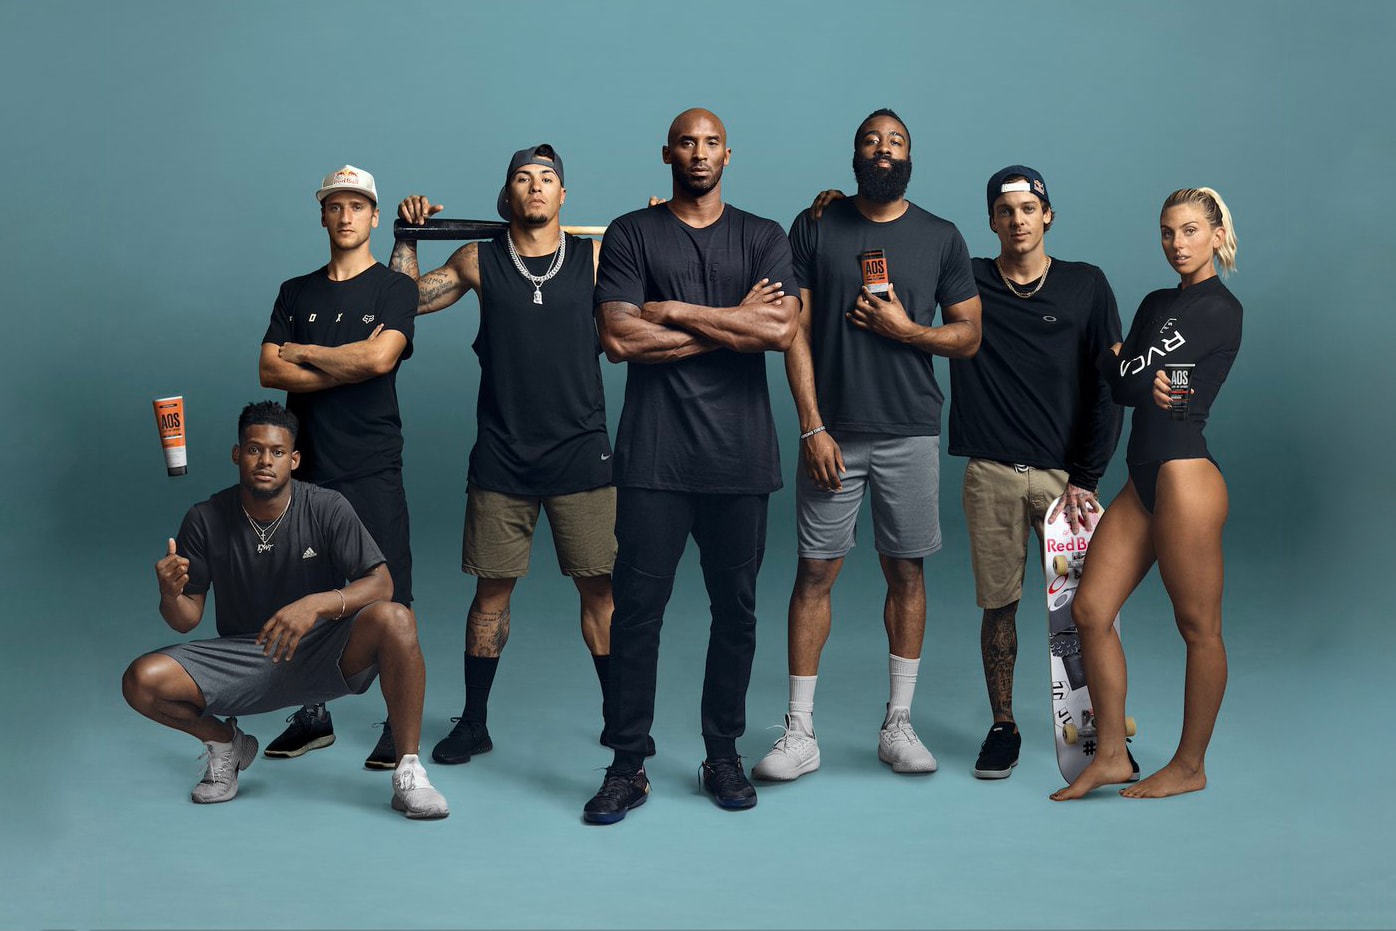 「洛杉磯商人」Kobe Bryant 推出全新運動護理品牌 Art Of Sport